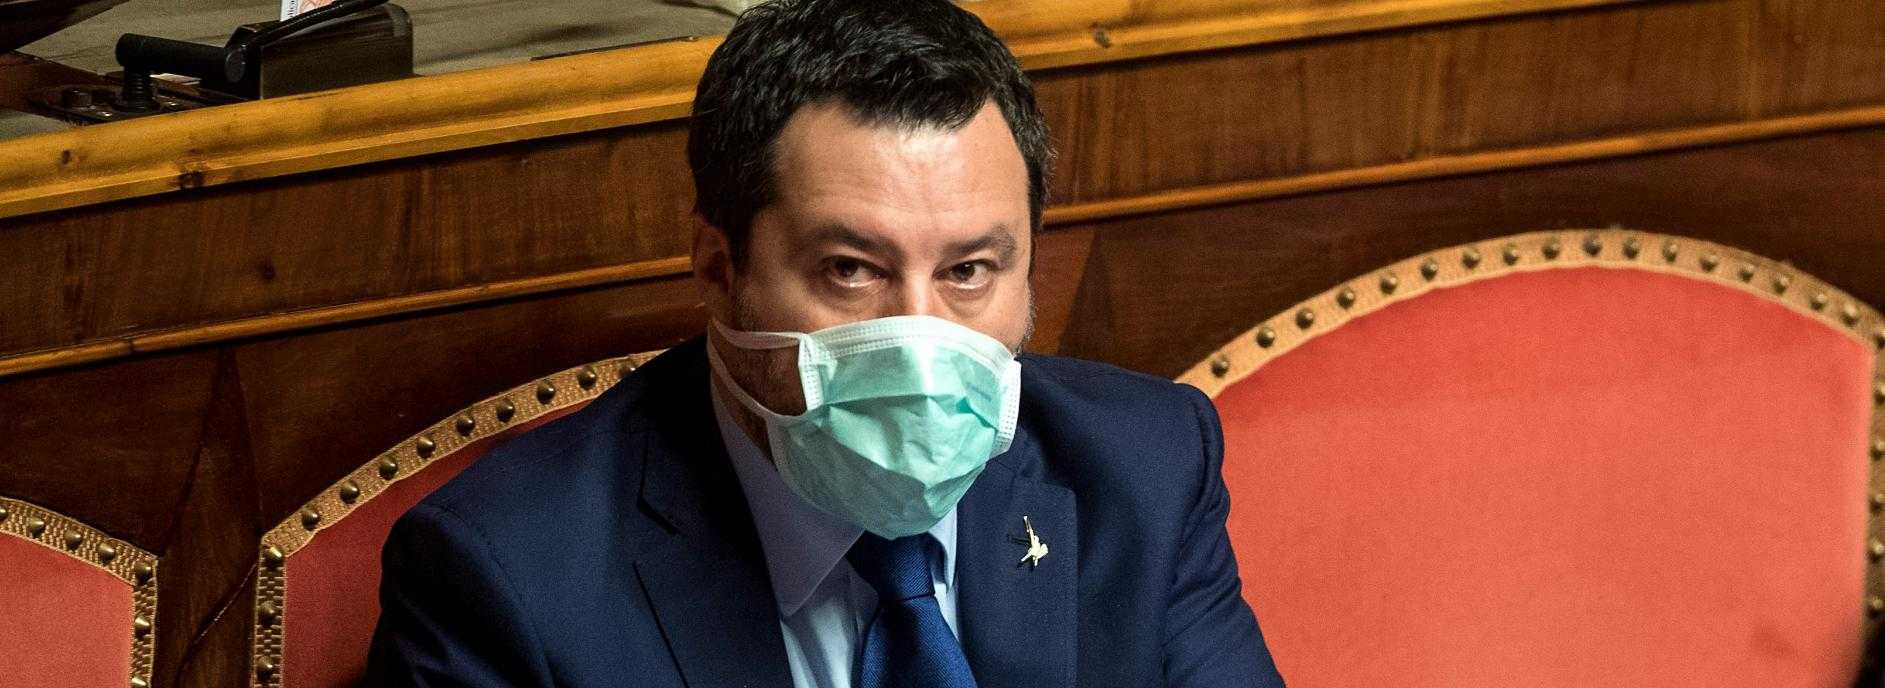 Pd fa asse con Lega su scuola, Salvini"occupa" camere